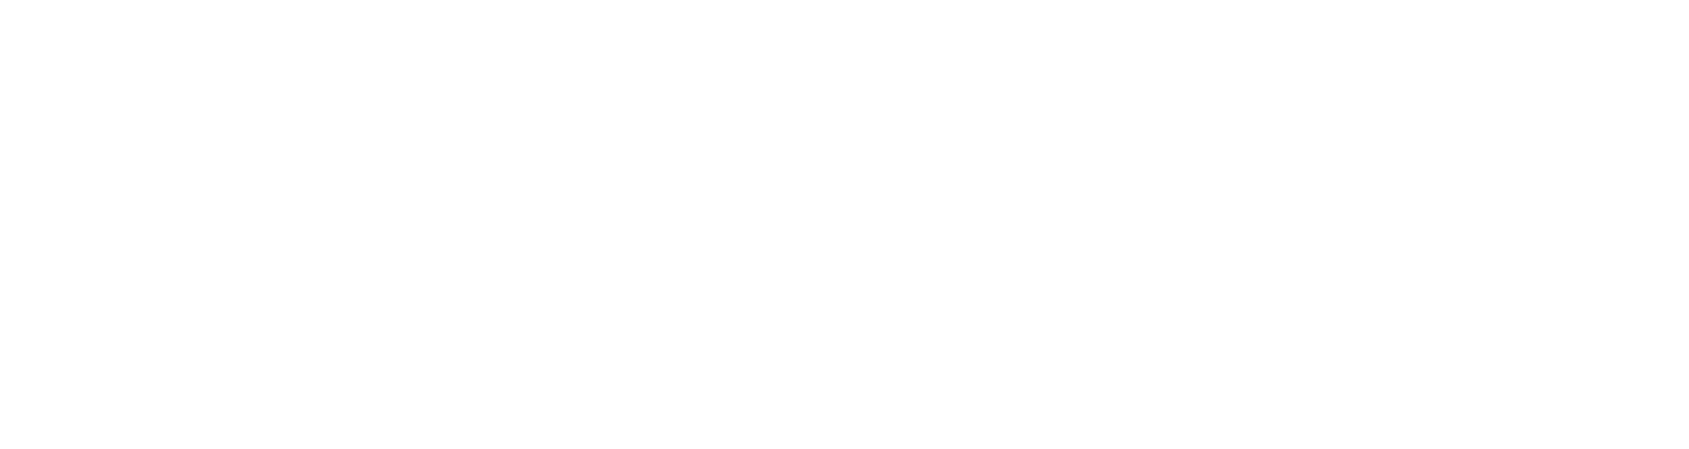 Logo Zap Contabil - Contador no Topo | Sua empresa no topo do mercado contábil